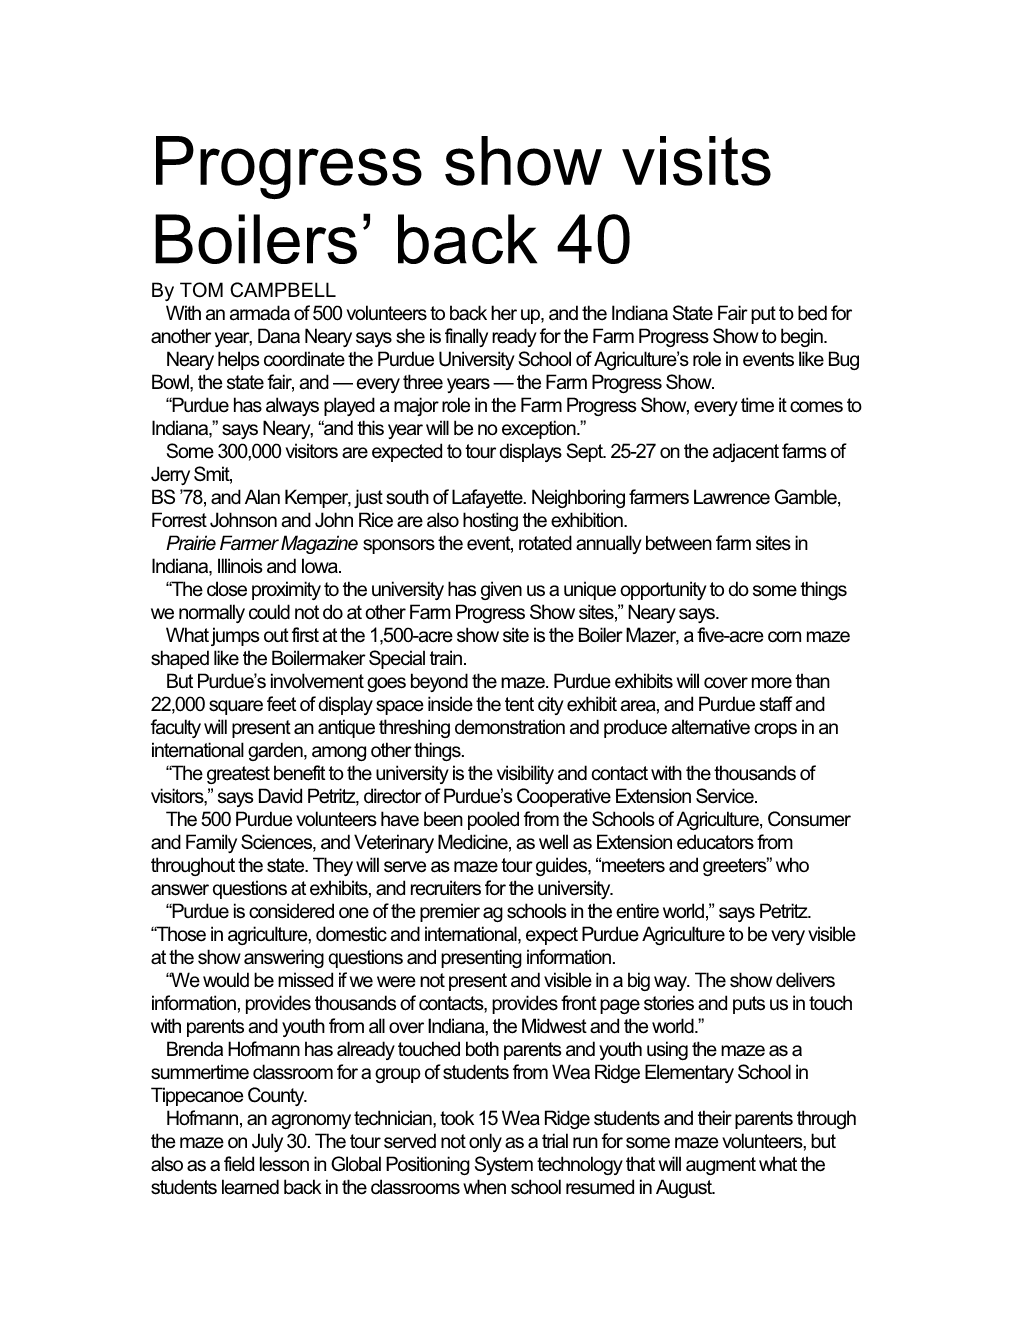 Progress Show Visits Boilers Back 40